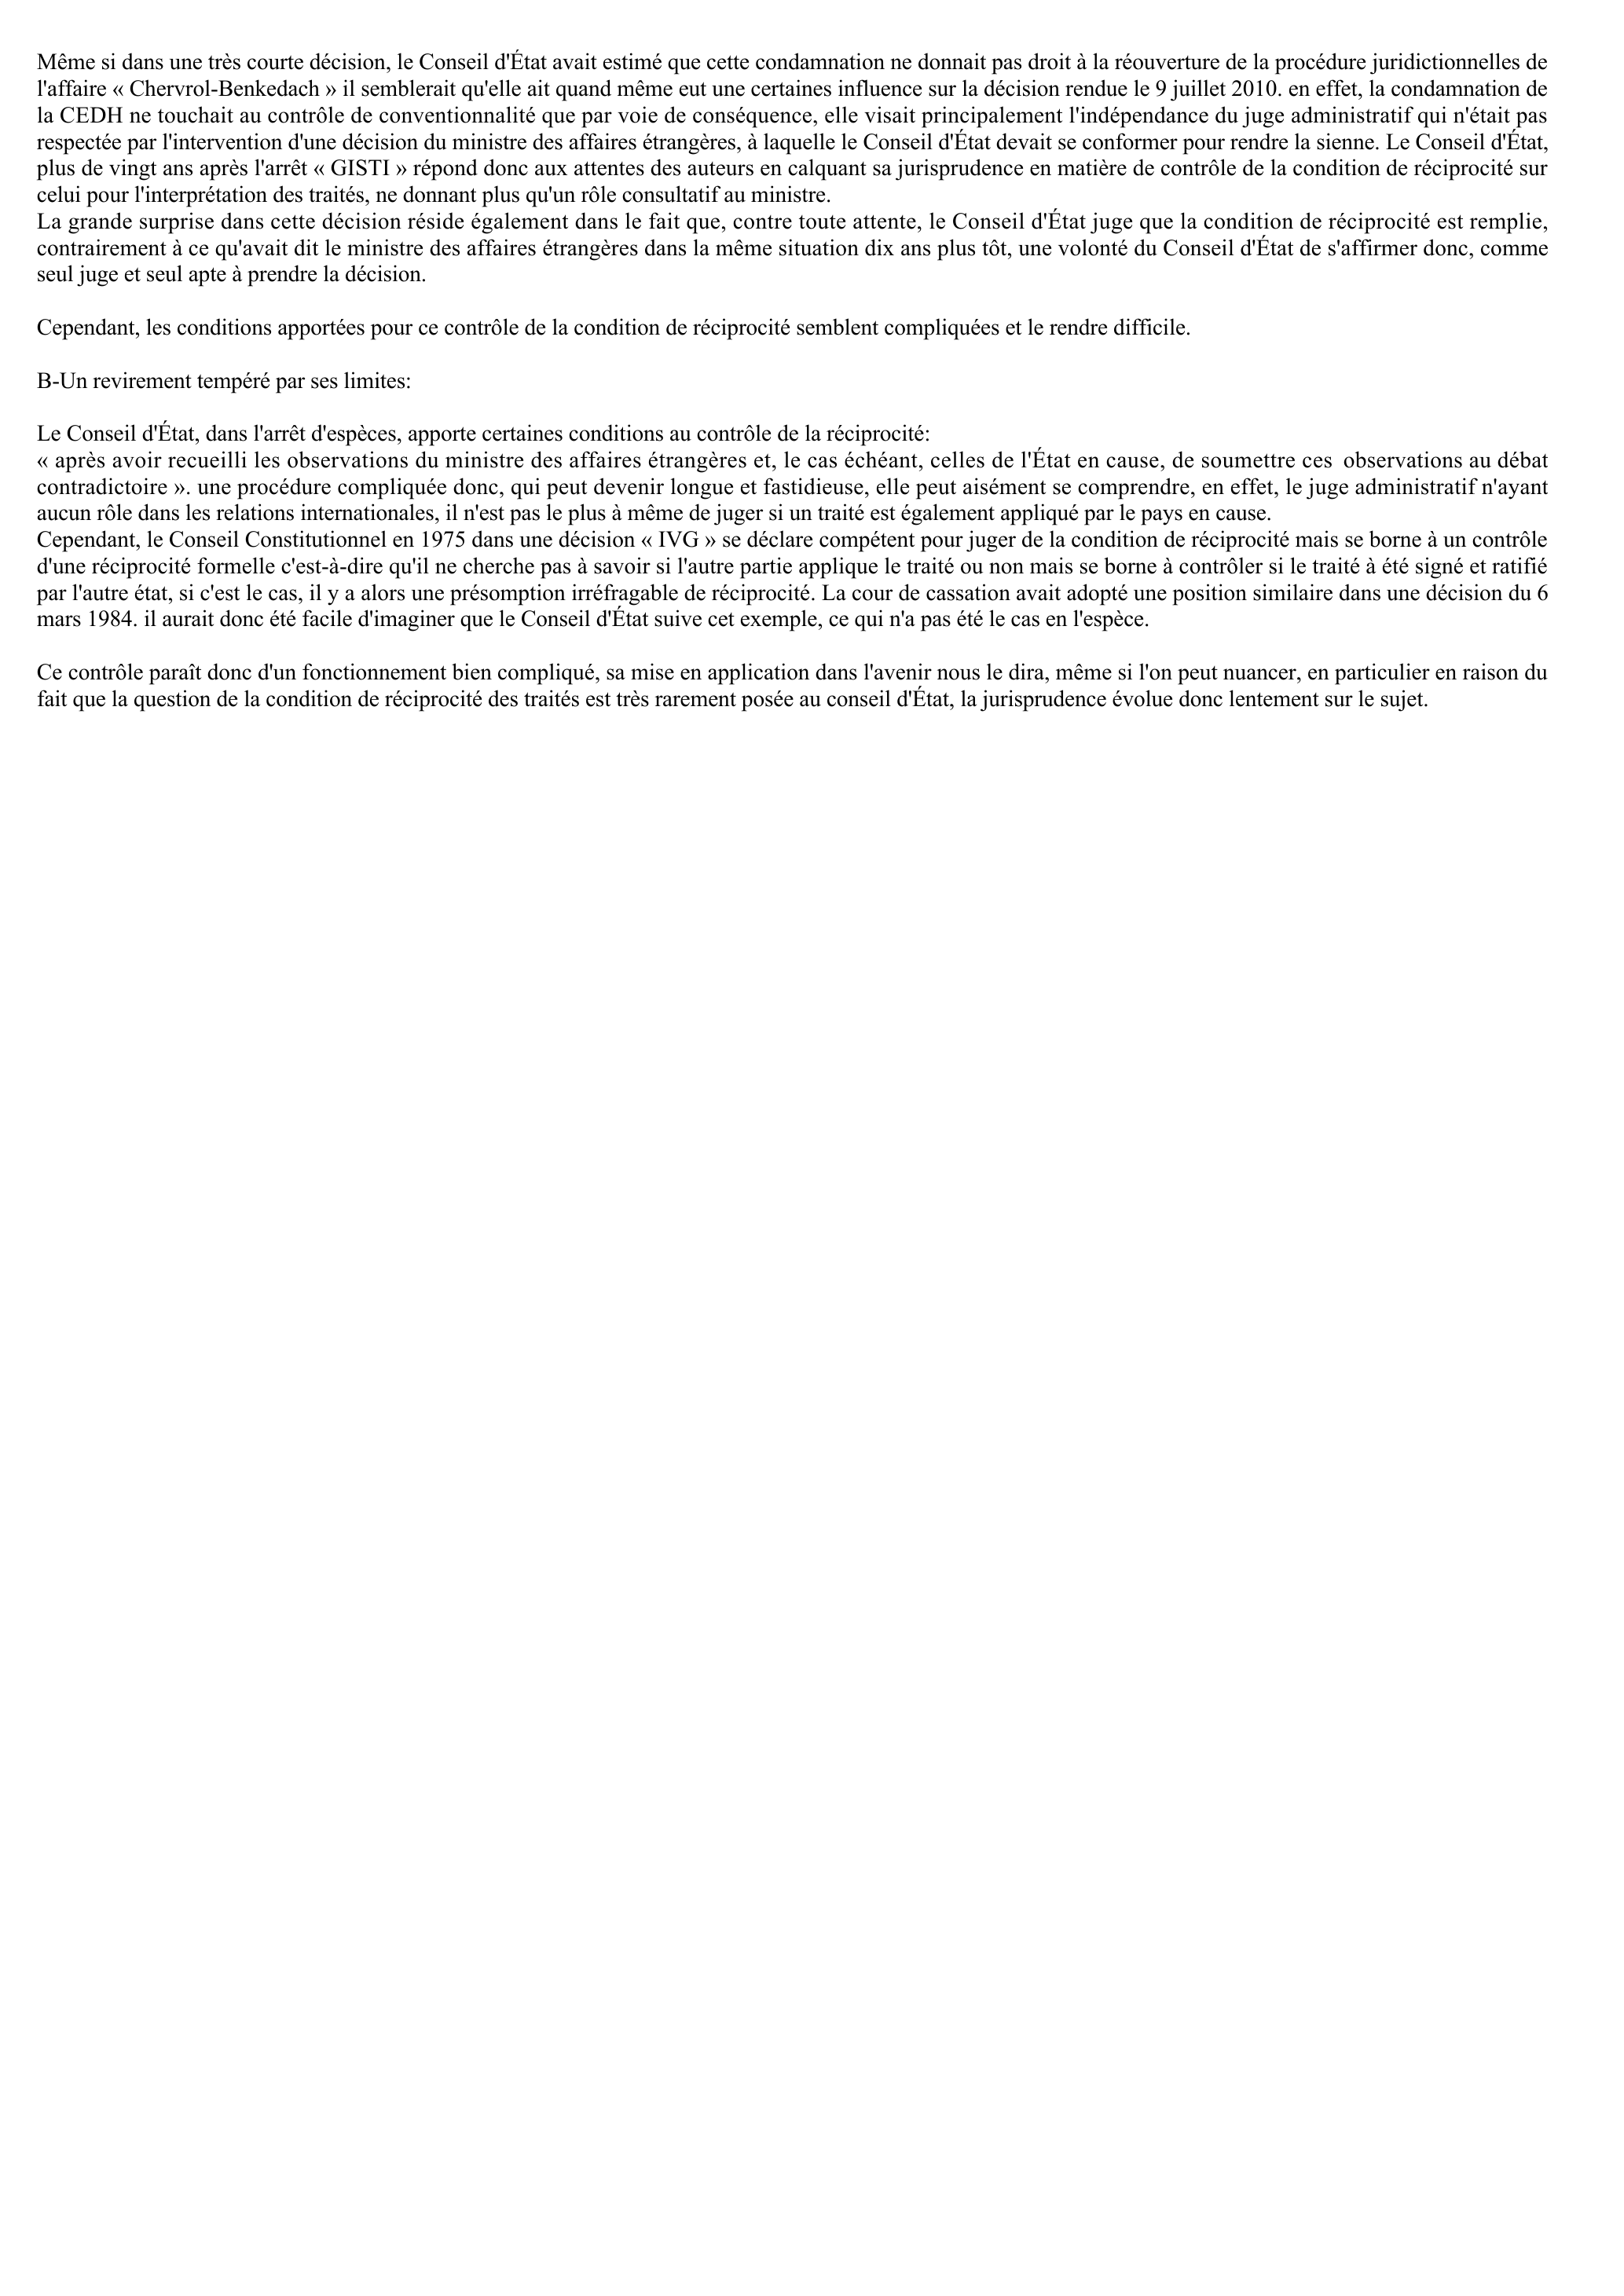 Prévisualisation du document CE ass. 9 Juillet 2010 « Mme Cheriet-Benseghir »